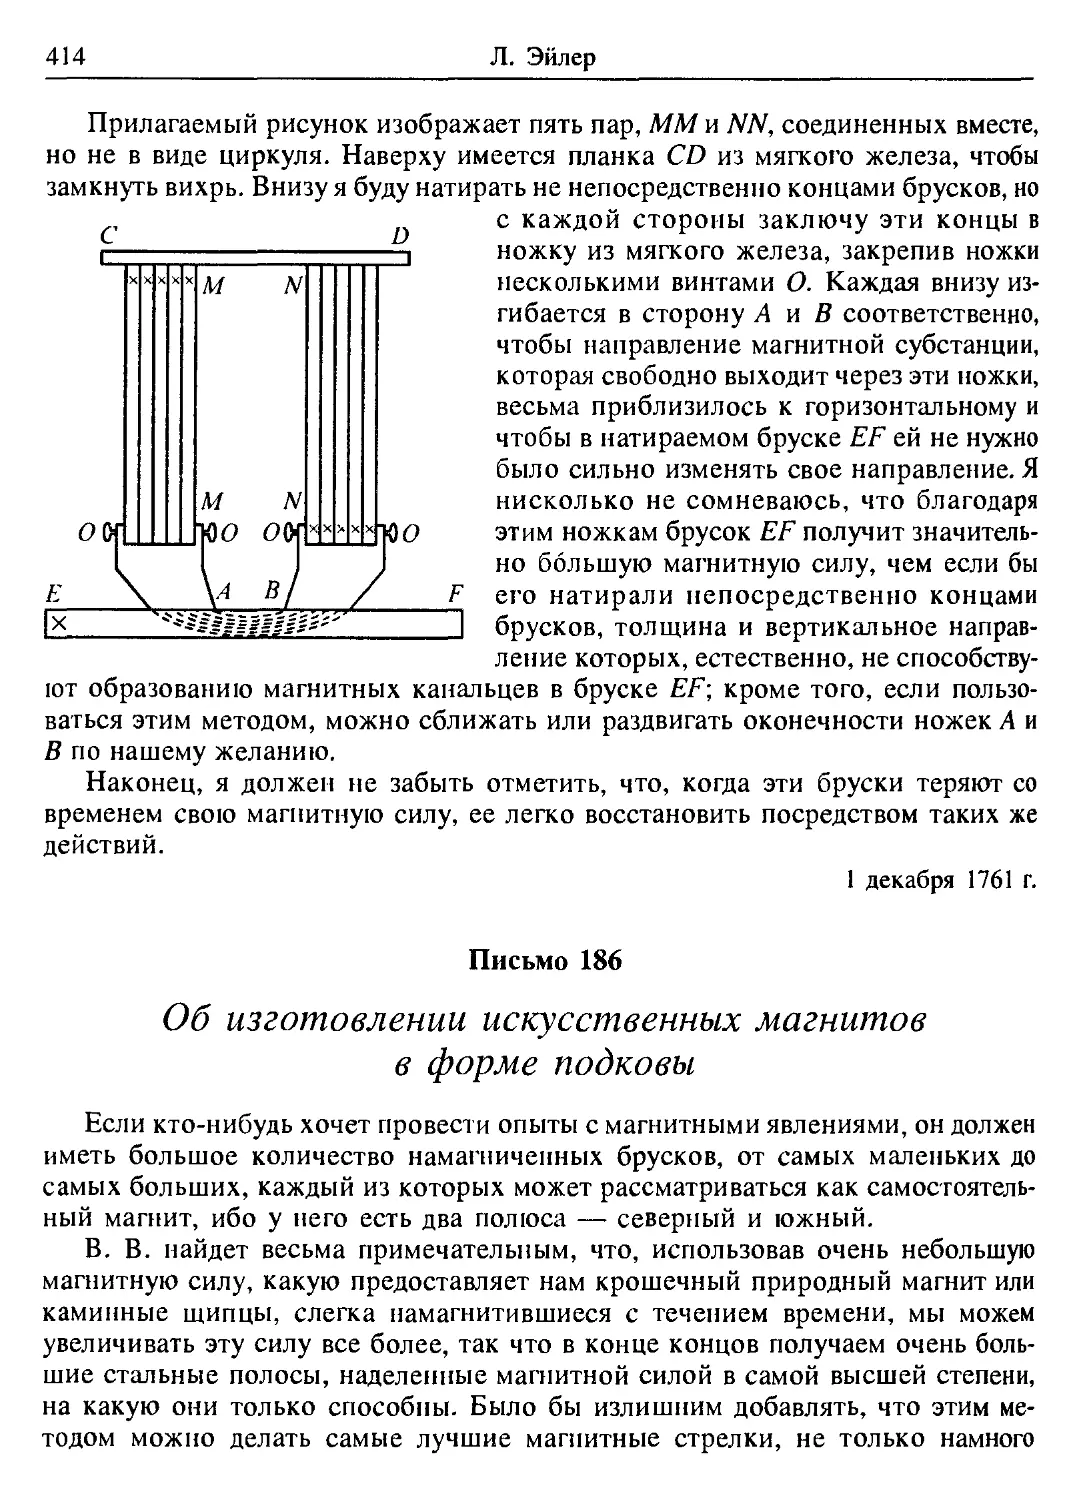 Письмо 186. Об изготовлении искусственных магнитов в форме подковы